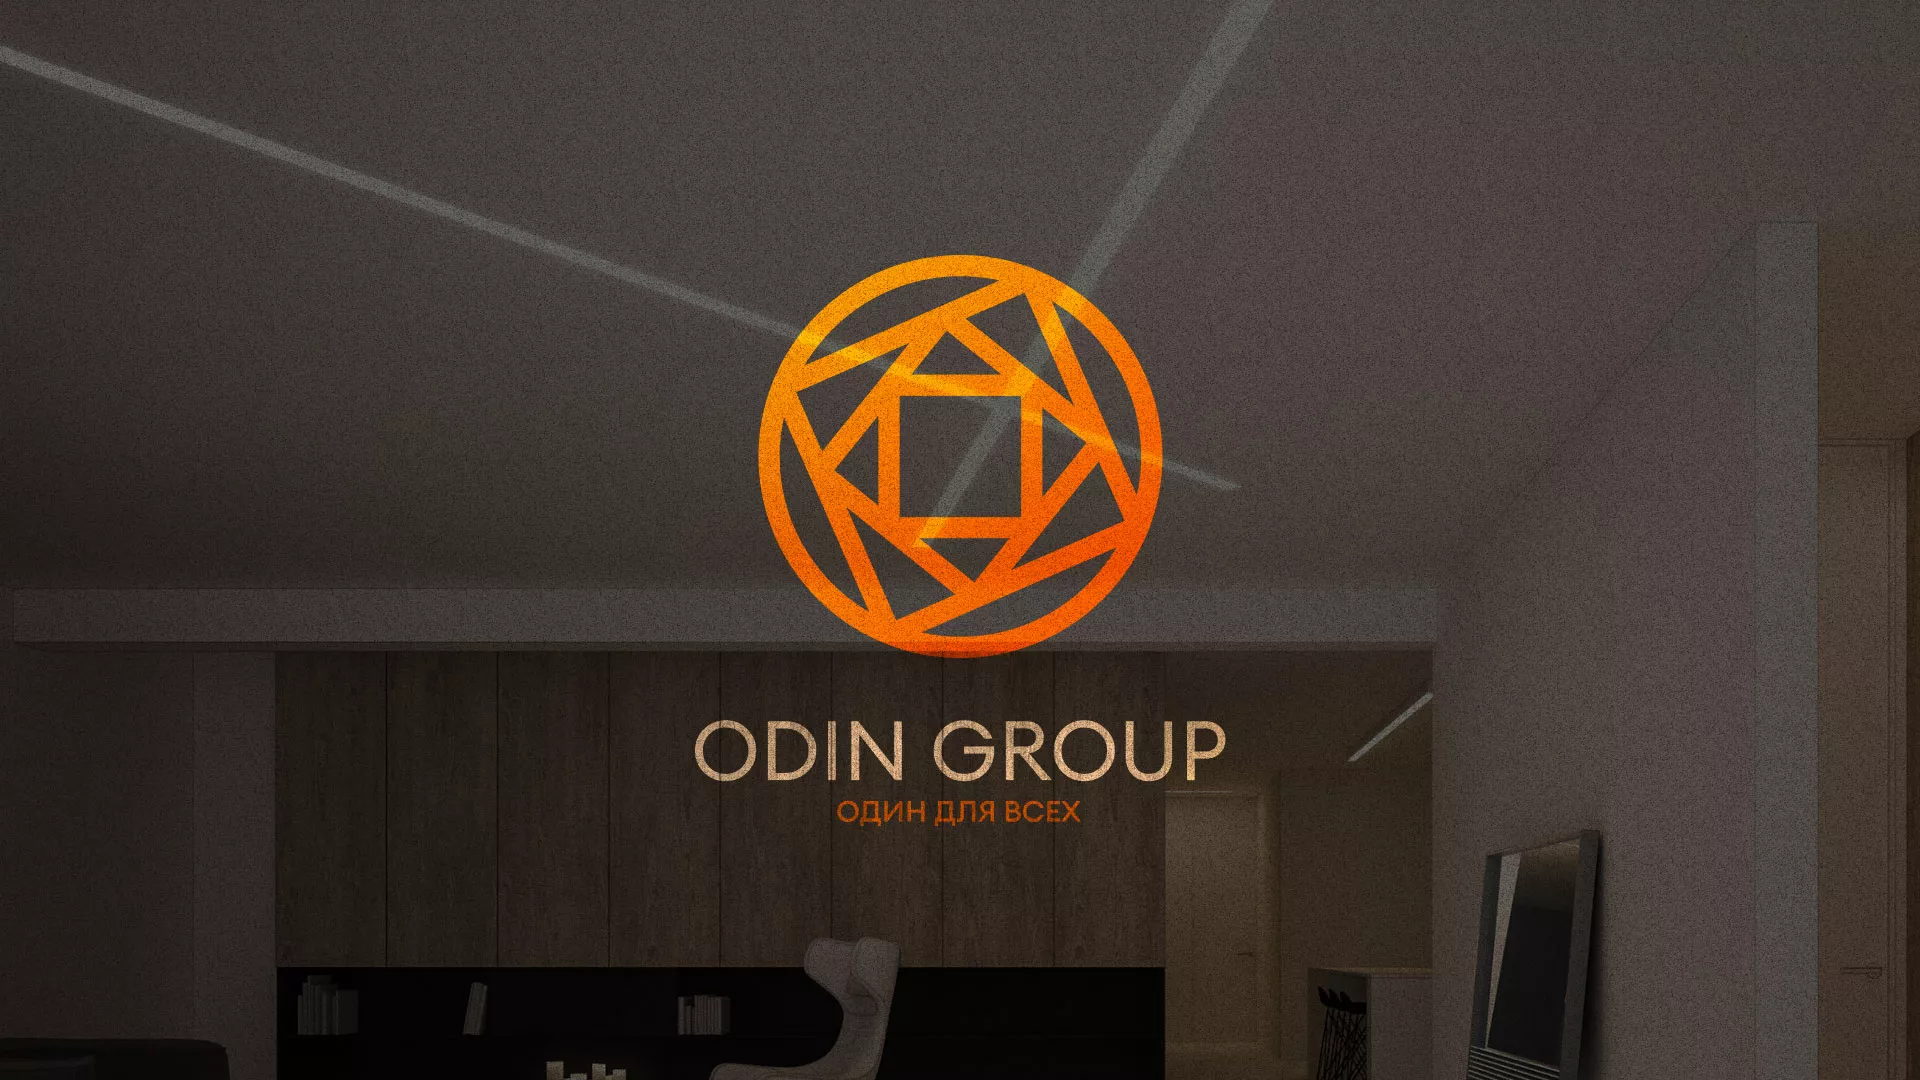 Разработка сайта в Железногорске-Илимском для компании «ODIN GROUP» по установке натяжных потолков